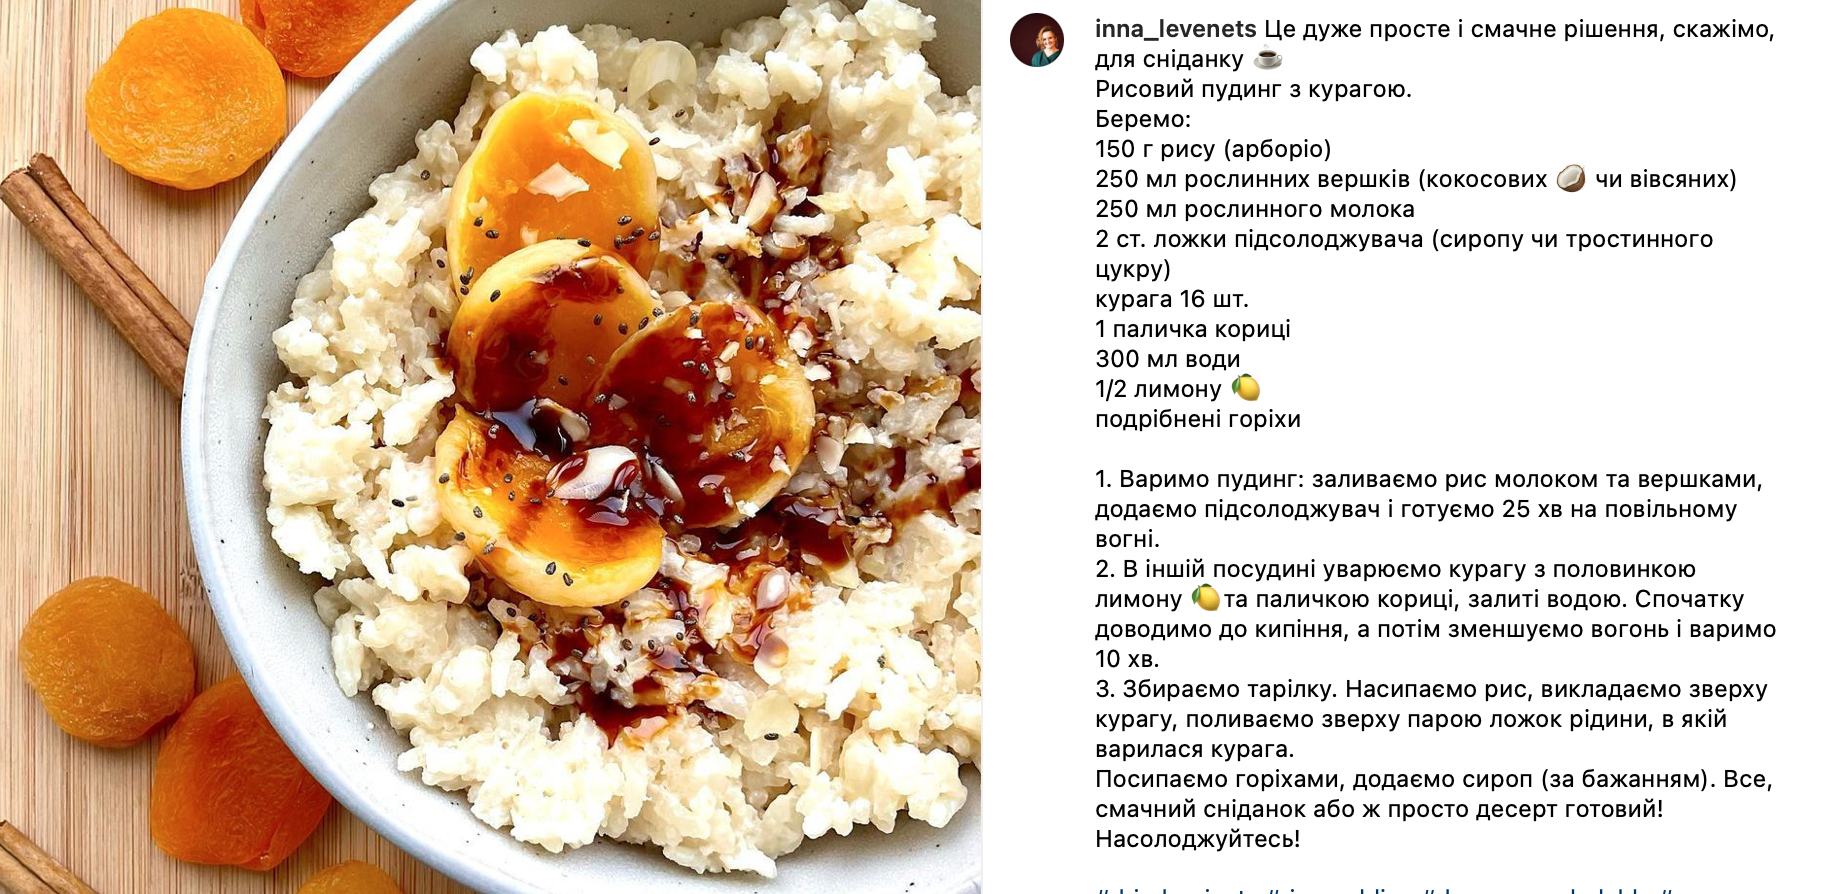 Рецепт рисового пудингу